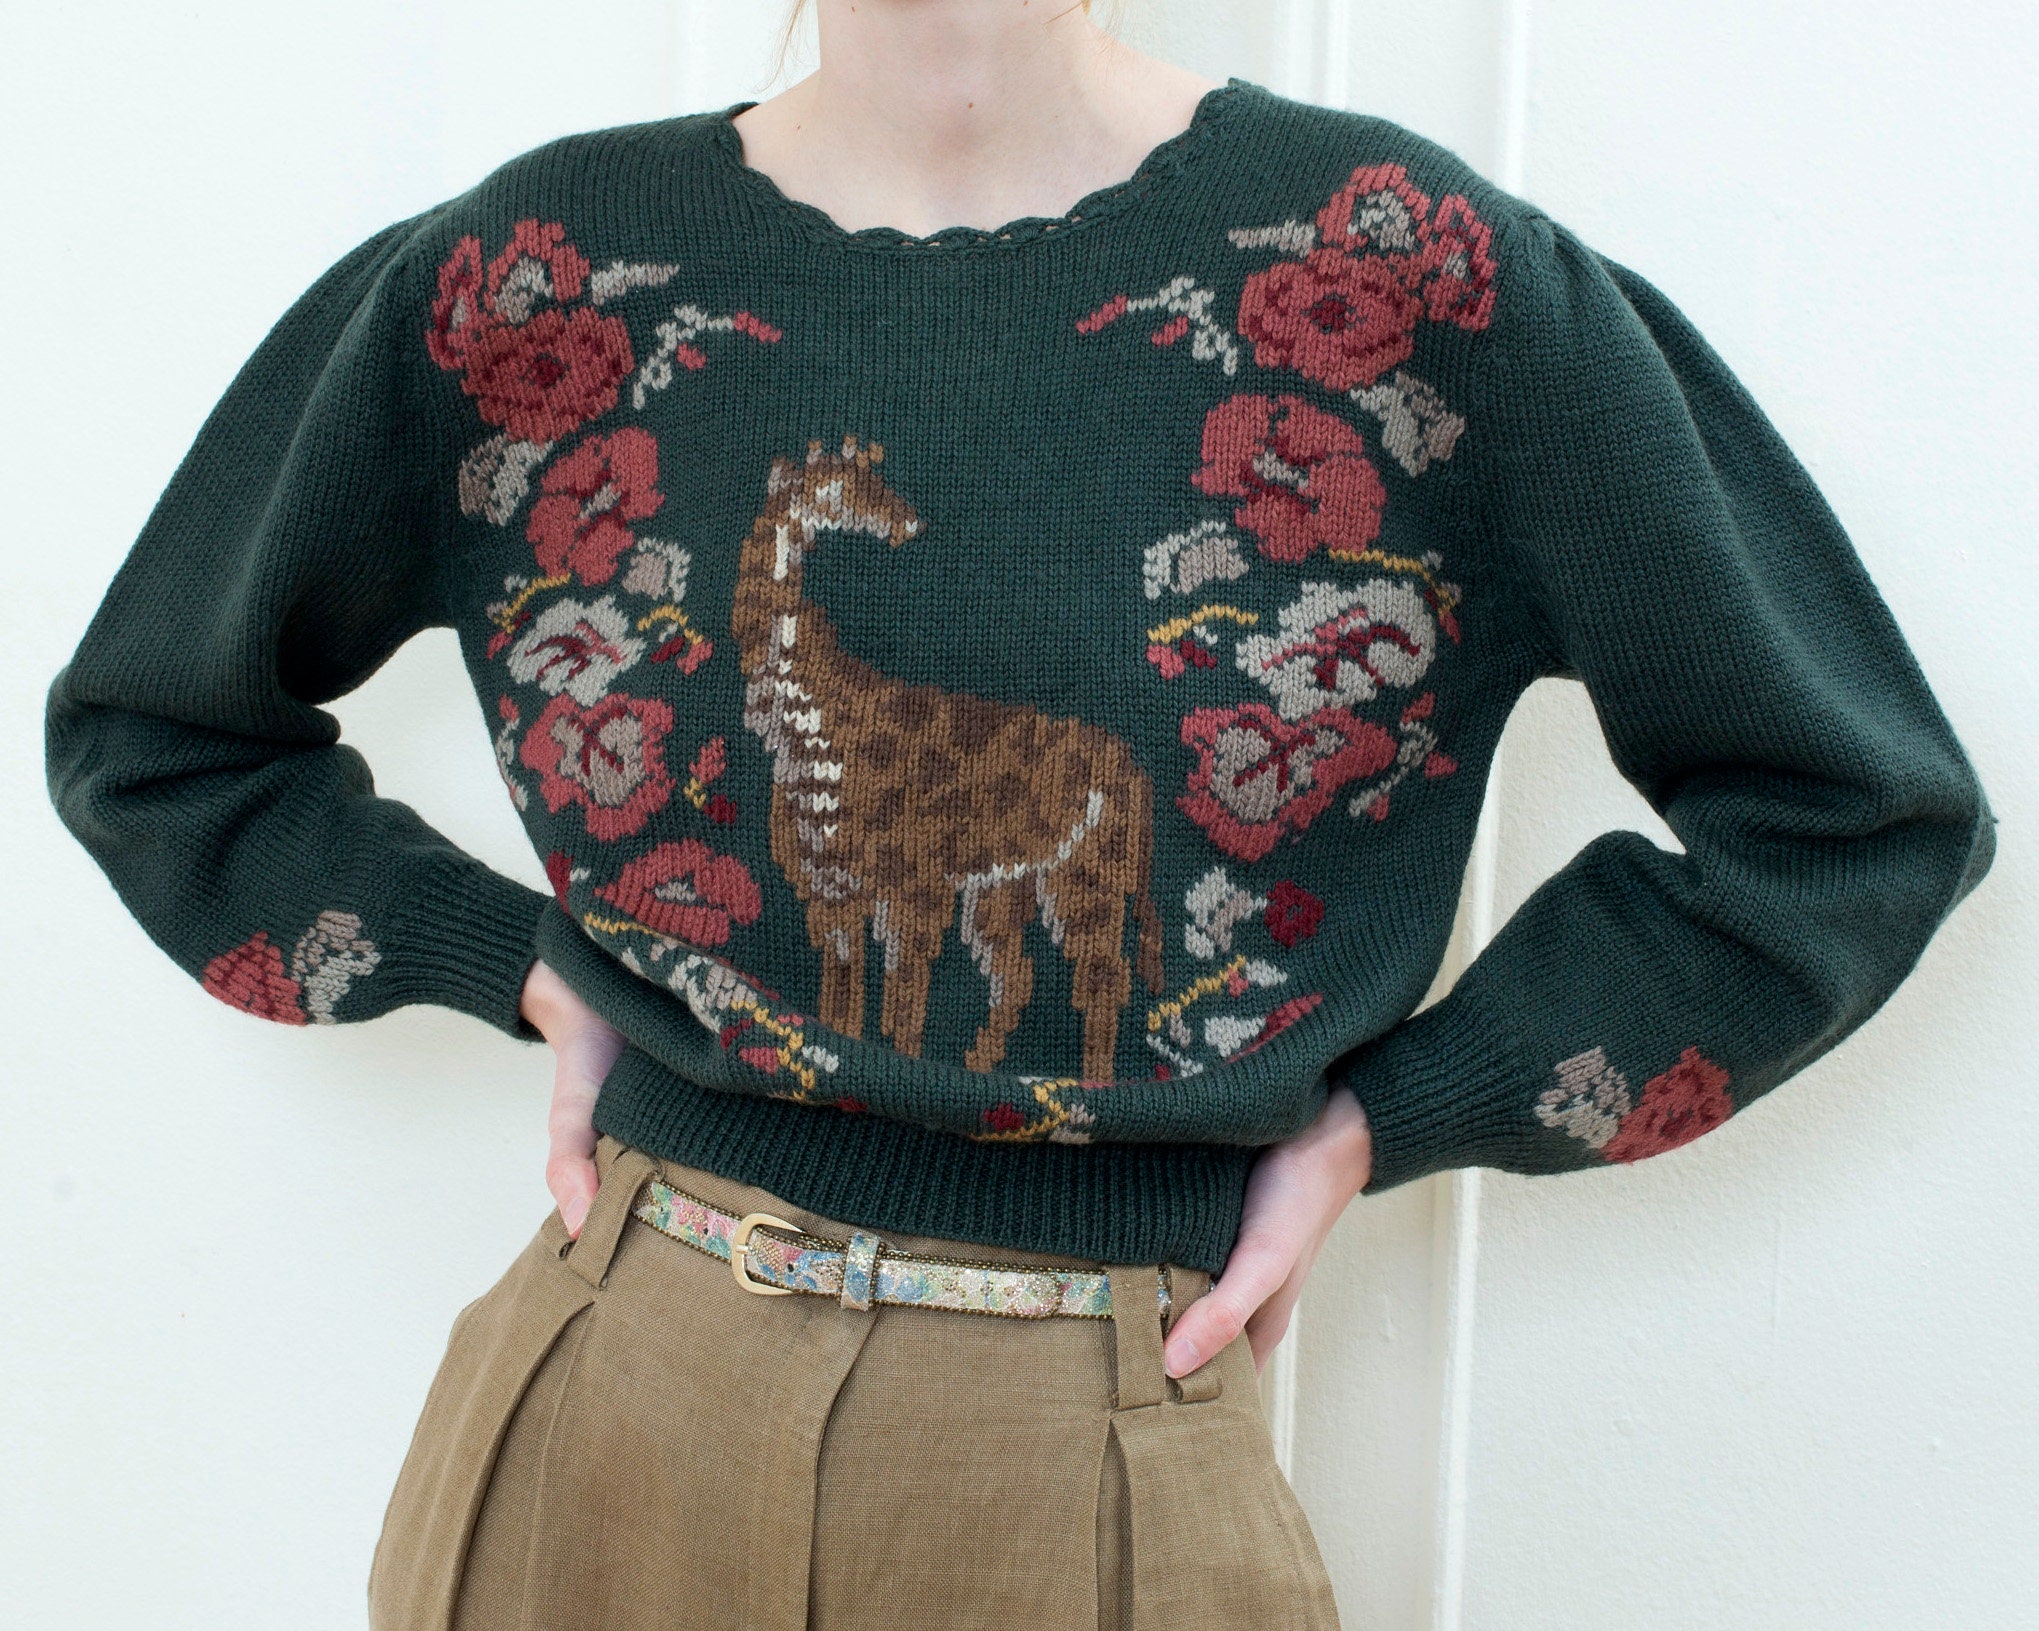 LOUIS VUITTON - Sequins Giraffe Knit Sweater Top  Knit sweater tops,  Sweater top, Knitted sweaters